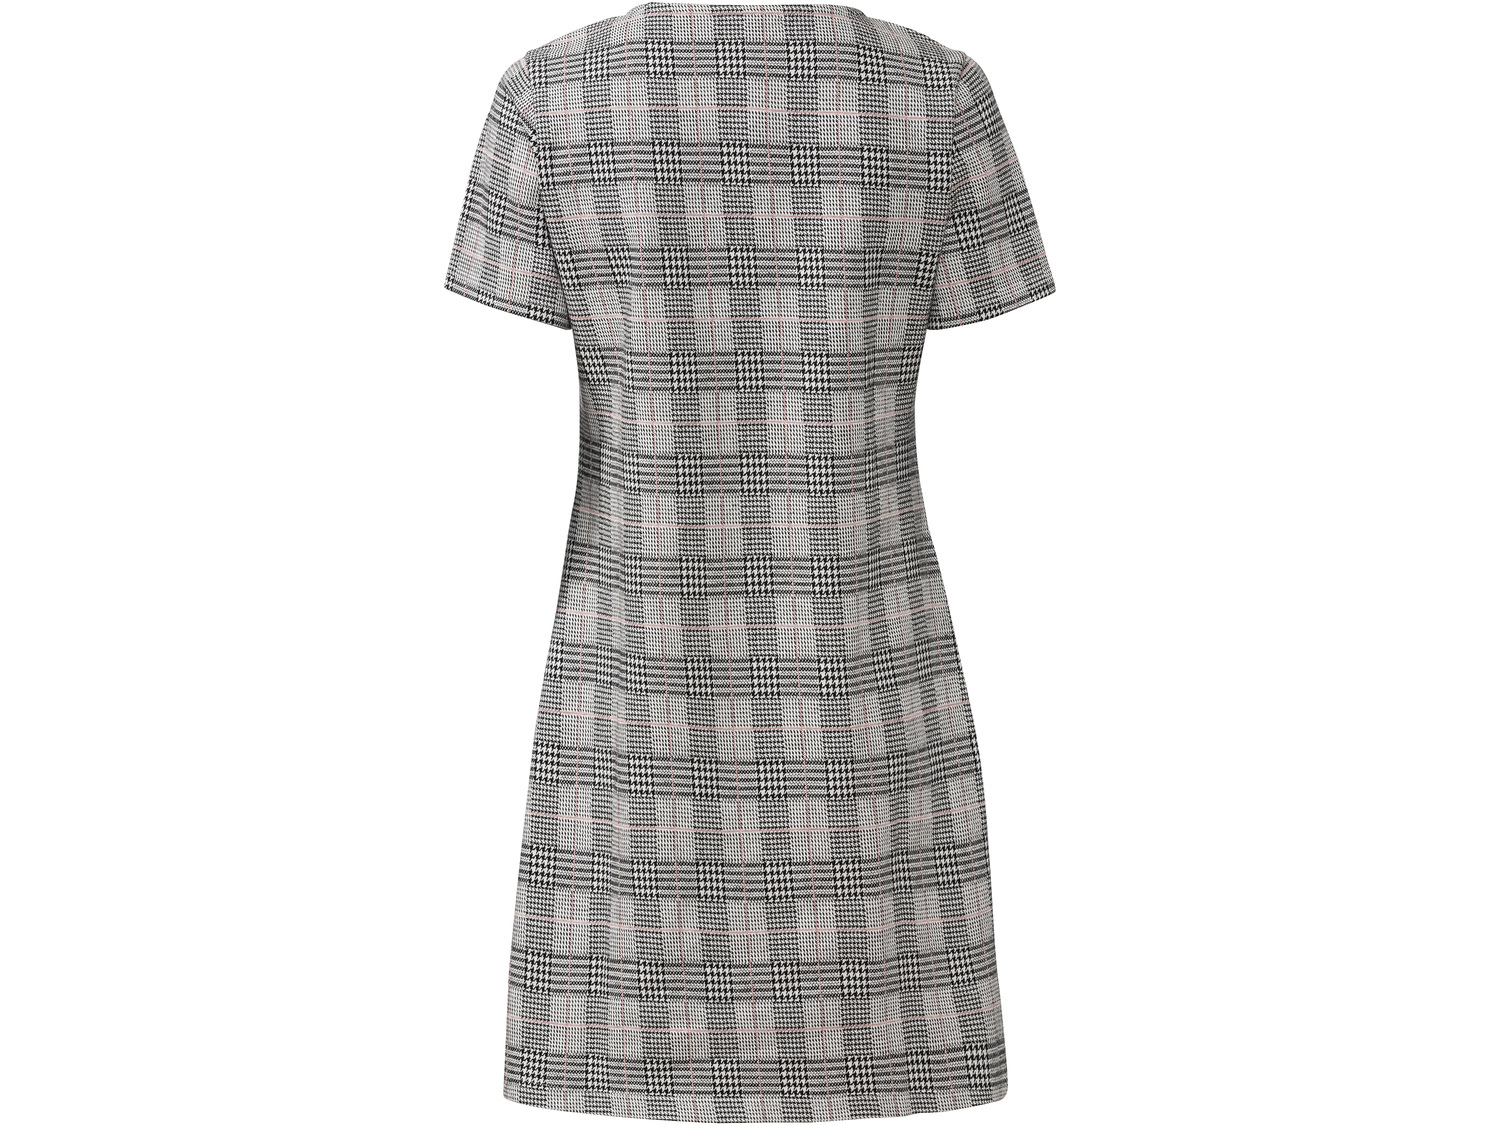 Sukienka Esmara, cena 39,99 PLN 
- wysoka zawartość bawełny
- rozmiary: XS-L
- ...